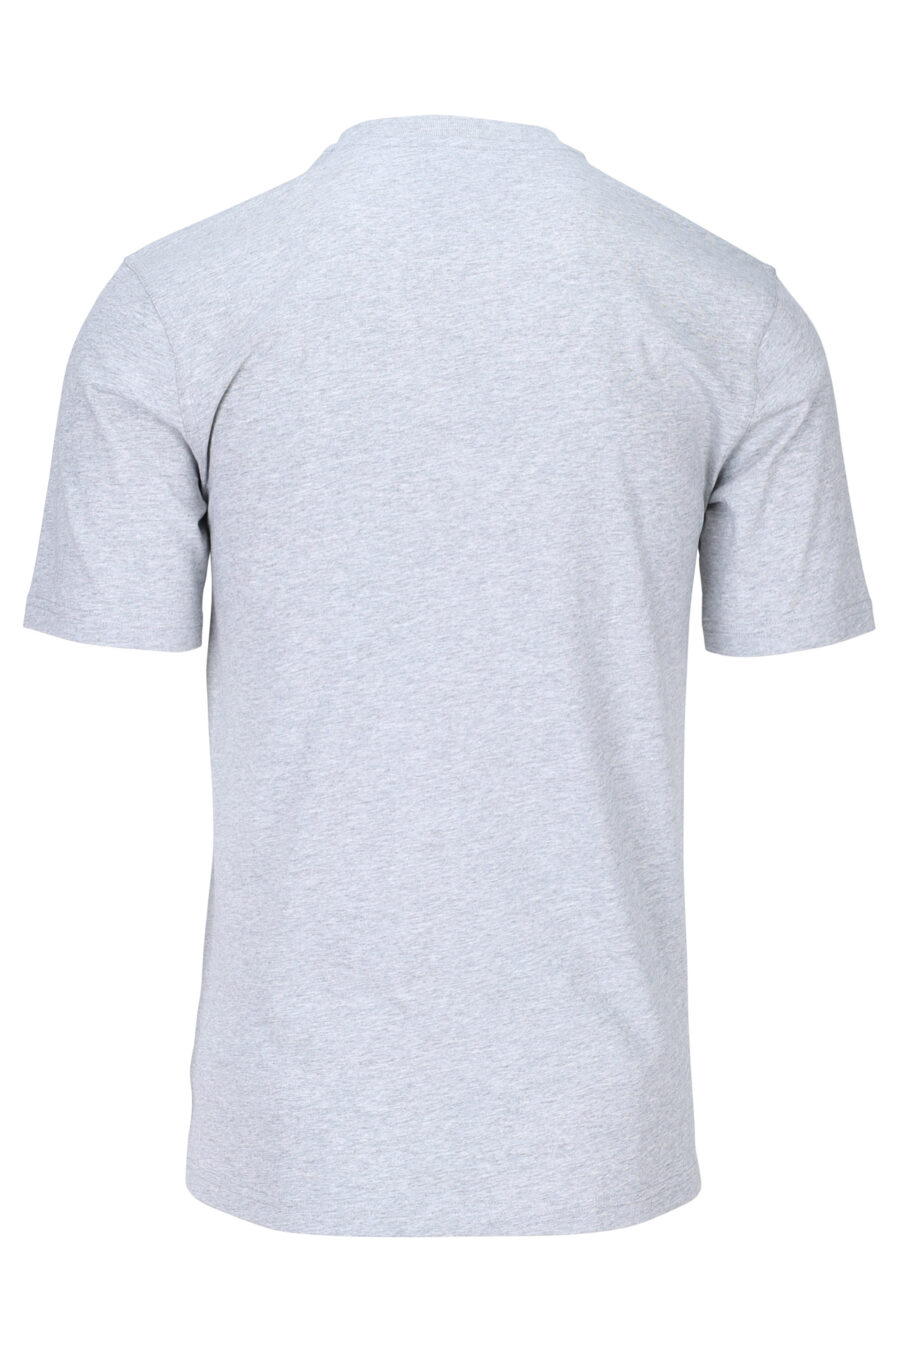 Camiseta gris con minilogo "teddy sastre" - 667113150802 1